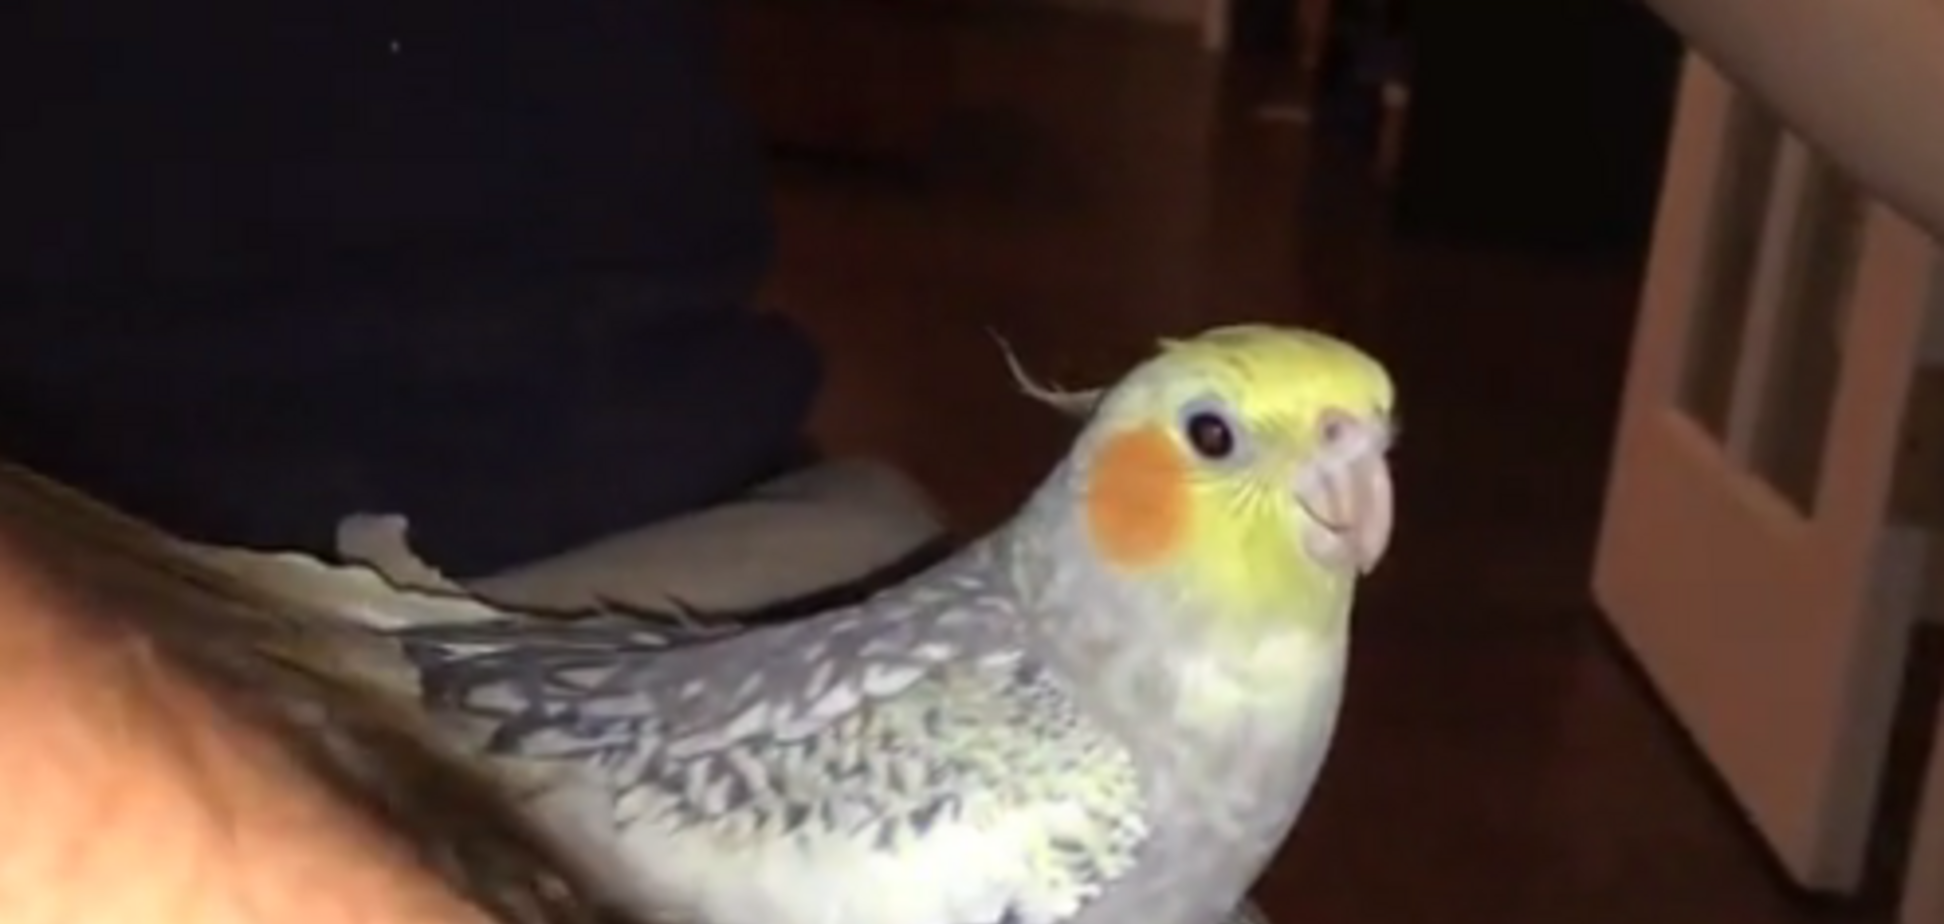 iPhone отдыхает: в сети появилось забавное видео с рингтоном от психованного попугая